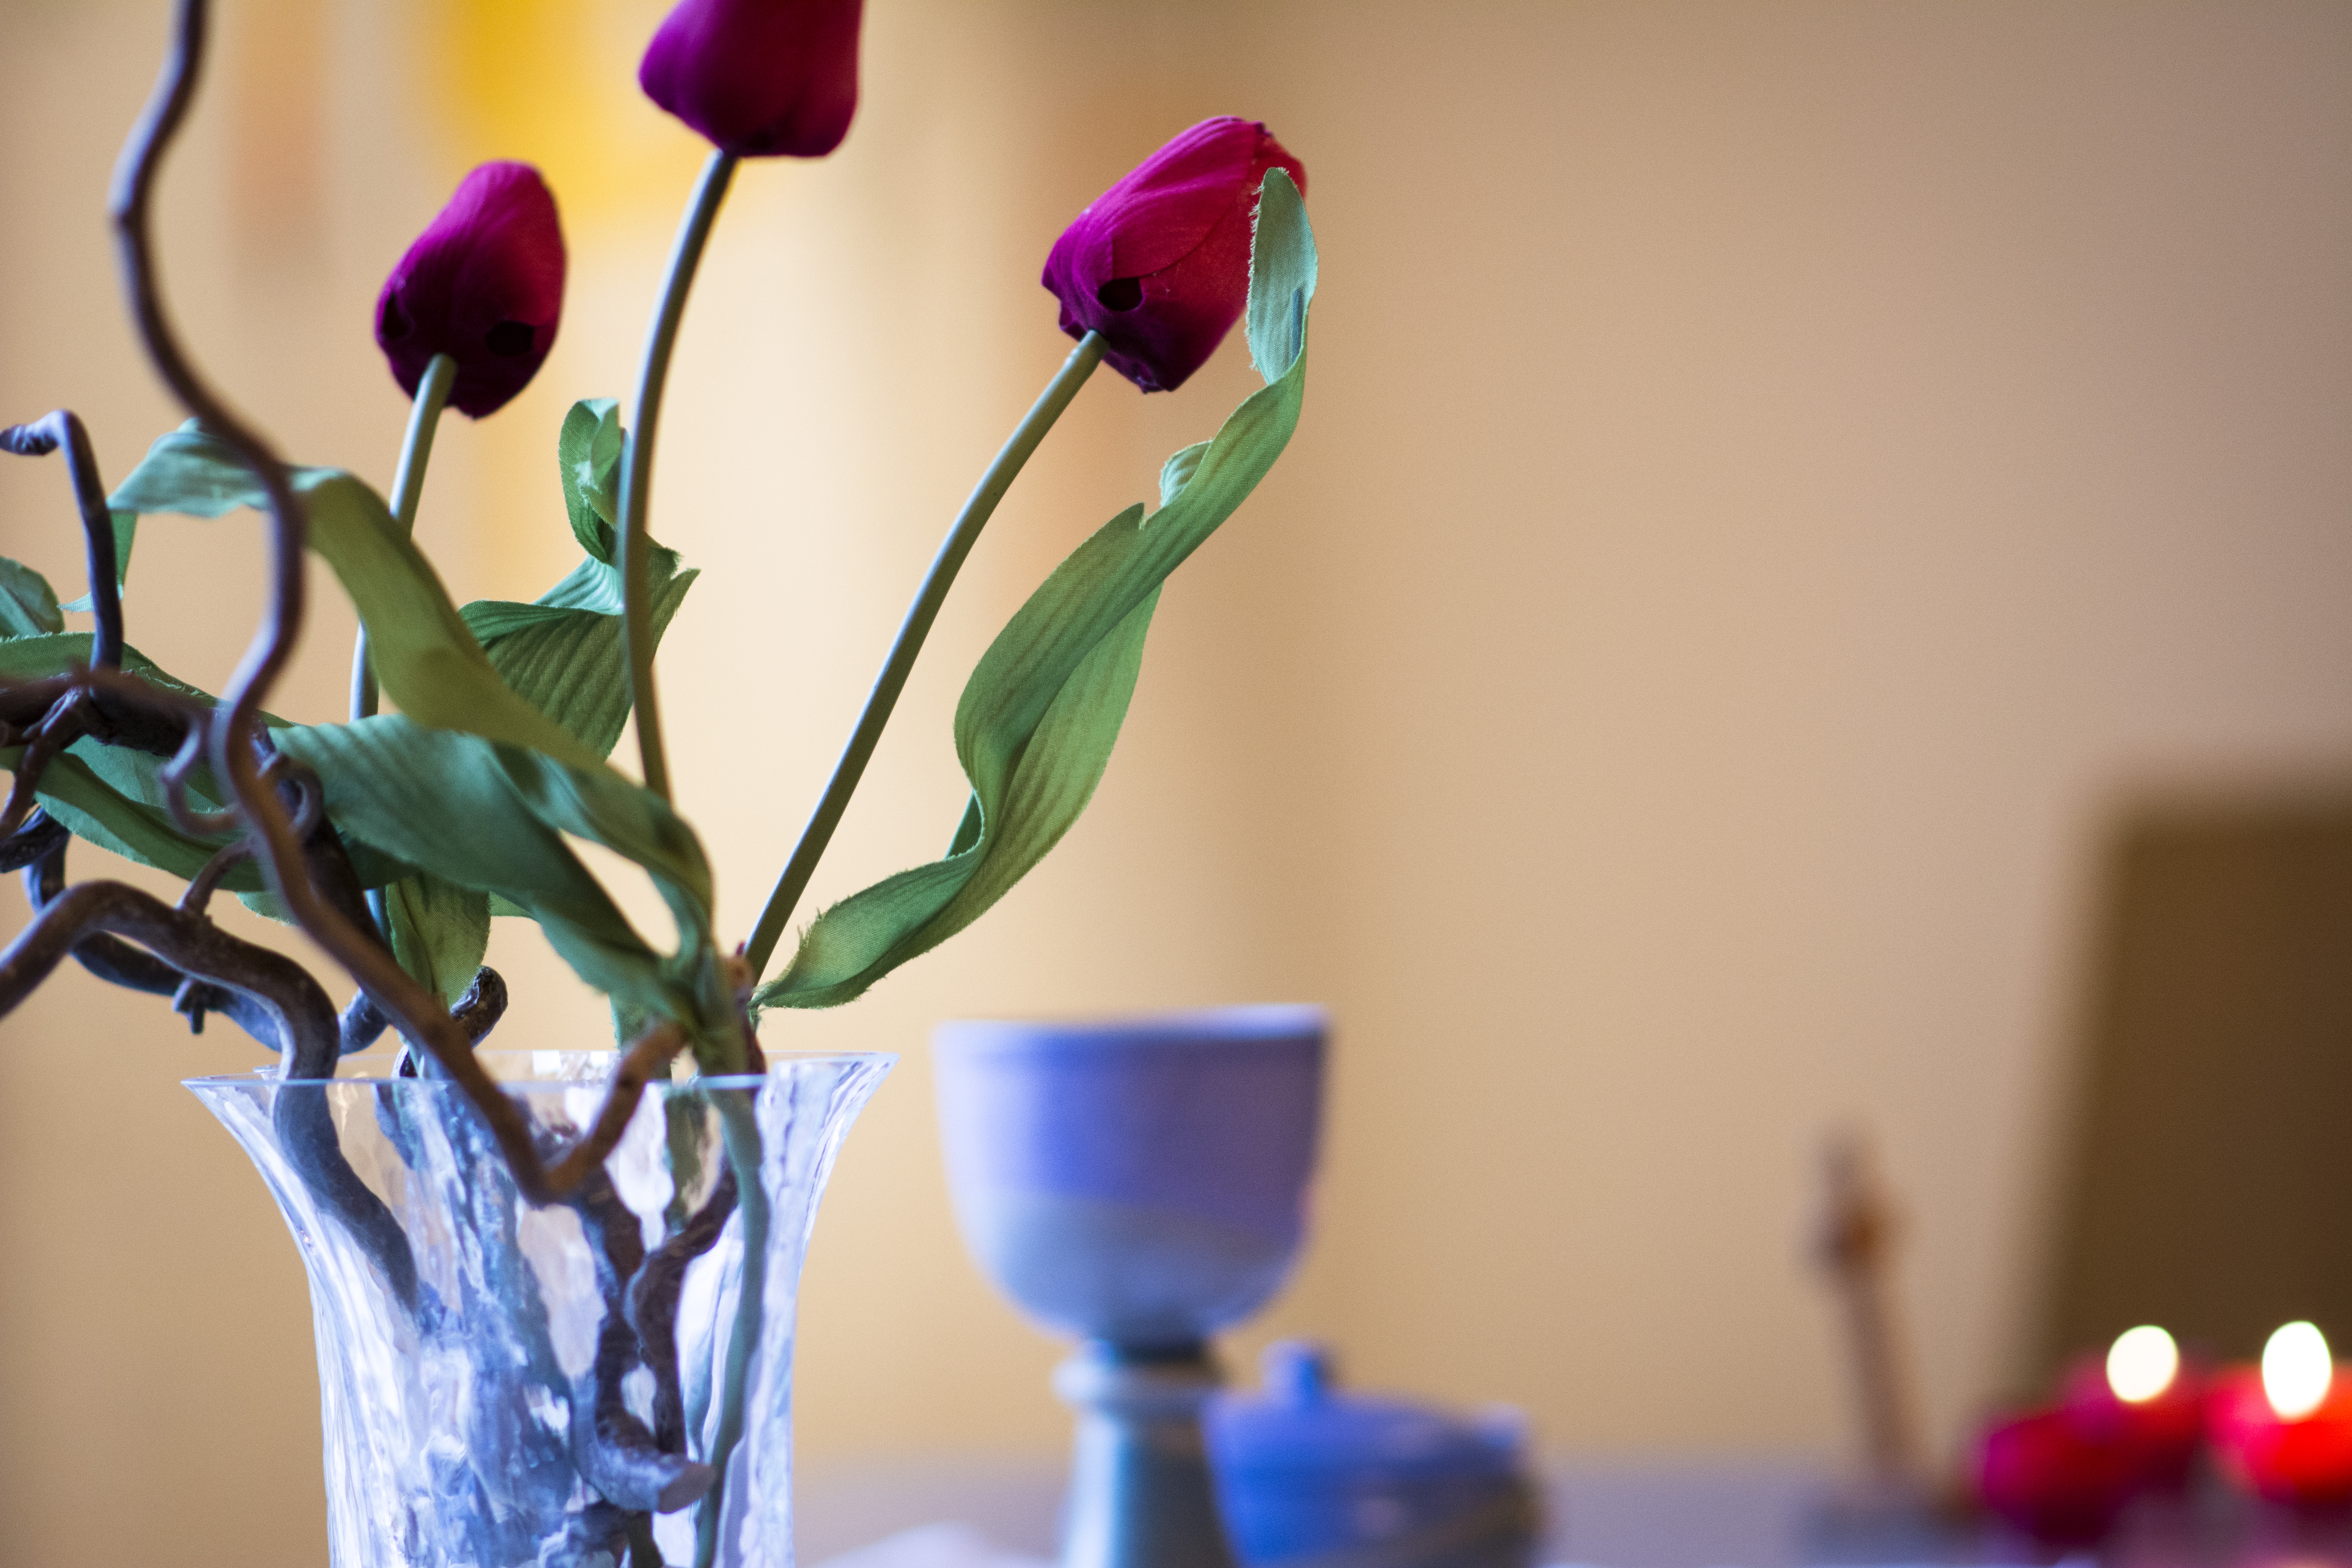 Till vänster syns en vas med röda tulpaner. Vasen är ljusblå och genomskinlig. I bakgrunden till höger syns konturerna  av en kalk, ett träkors och ett par levande taizéljus.